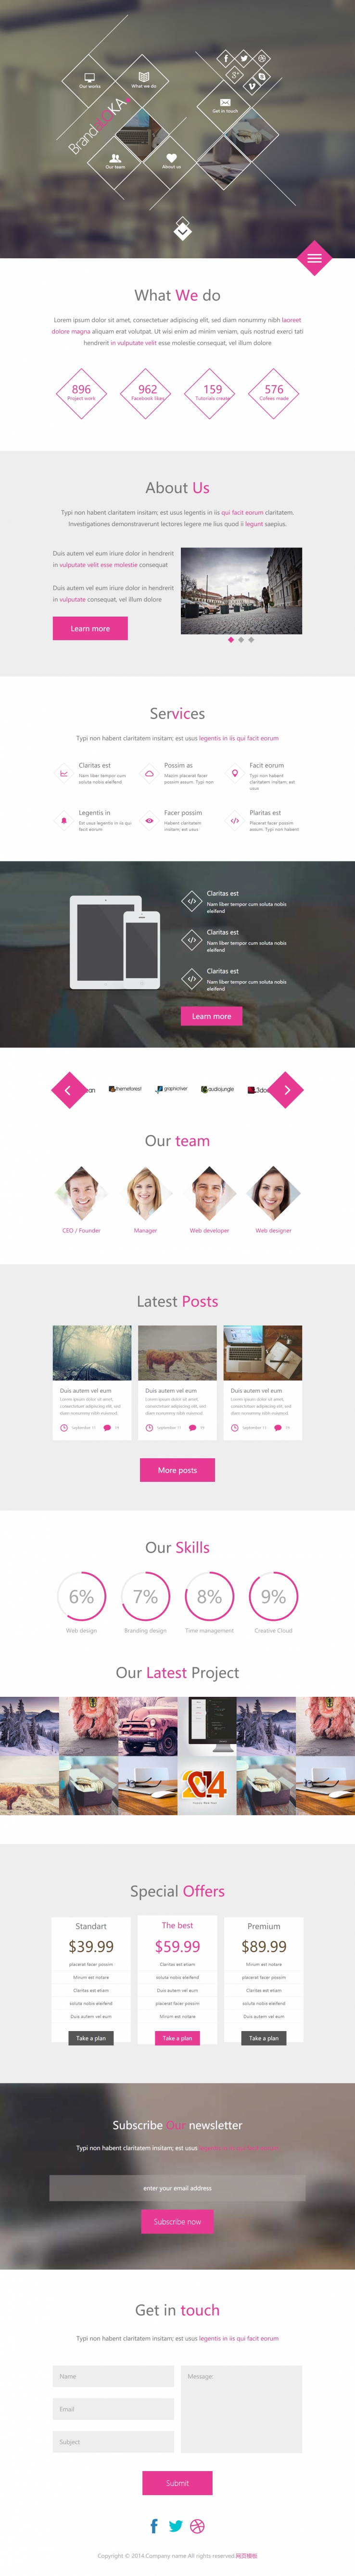 粉色大气风格的菱形四边形样式企业网站模板